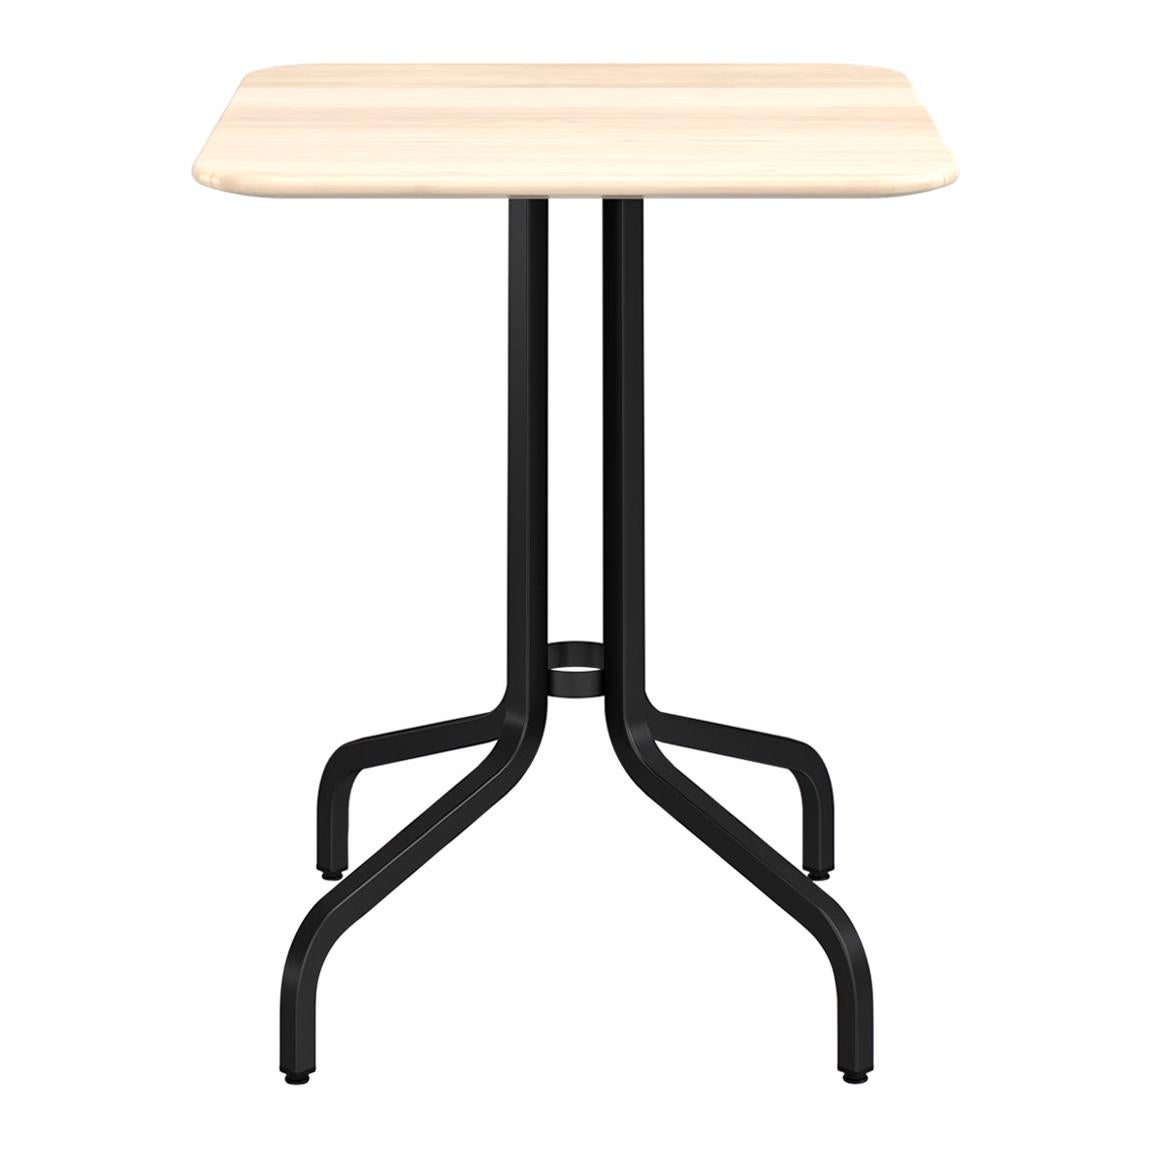 Petite table basse Emeco de 2,54 cm avec pieds noirs et plateau en bois par Jasper Morrison